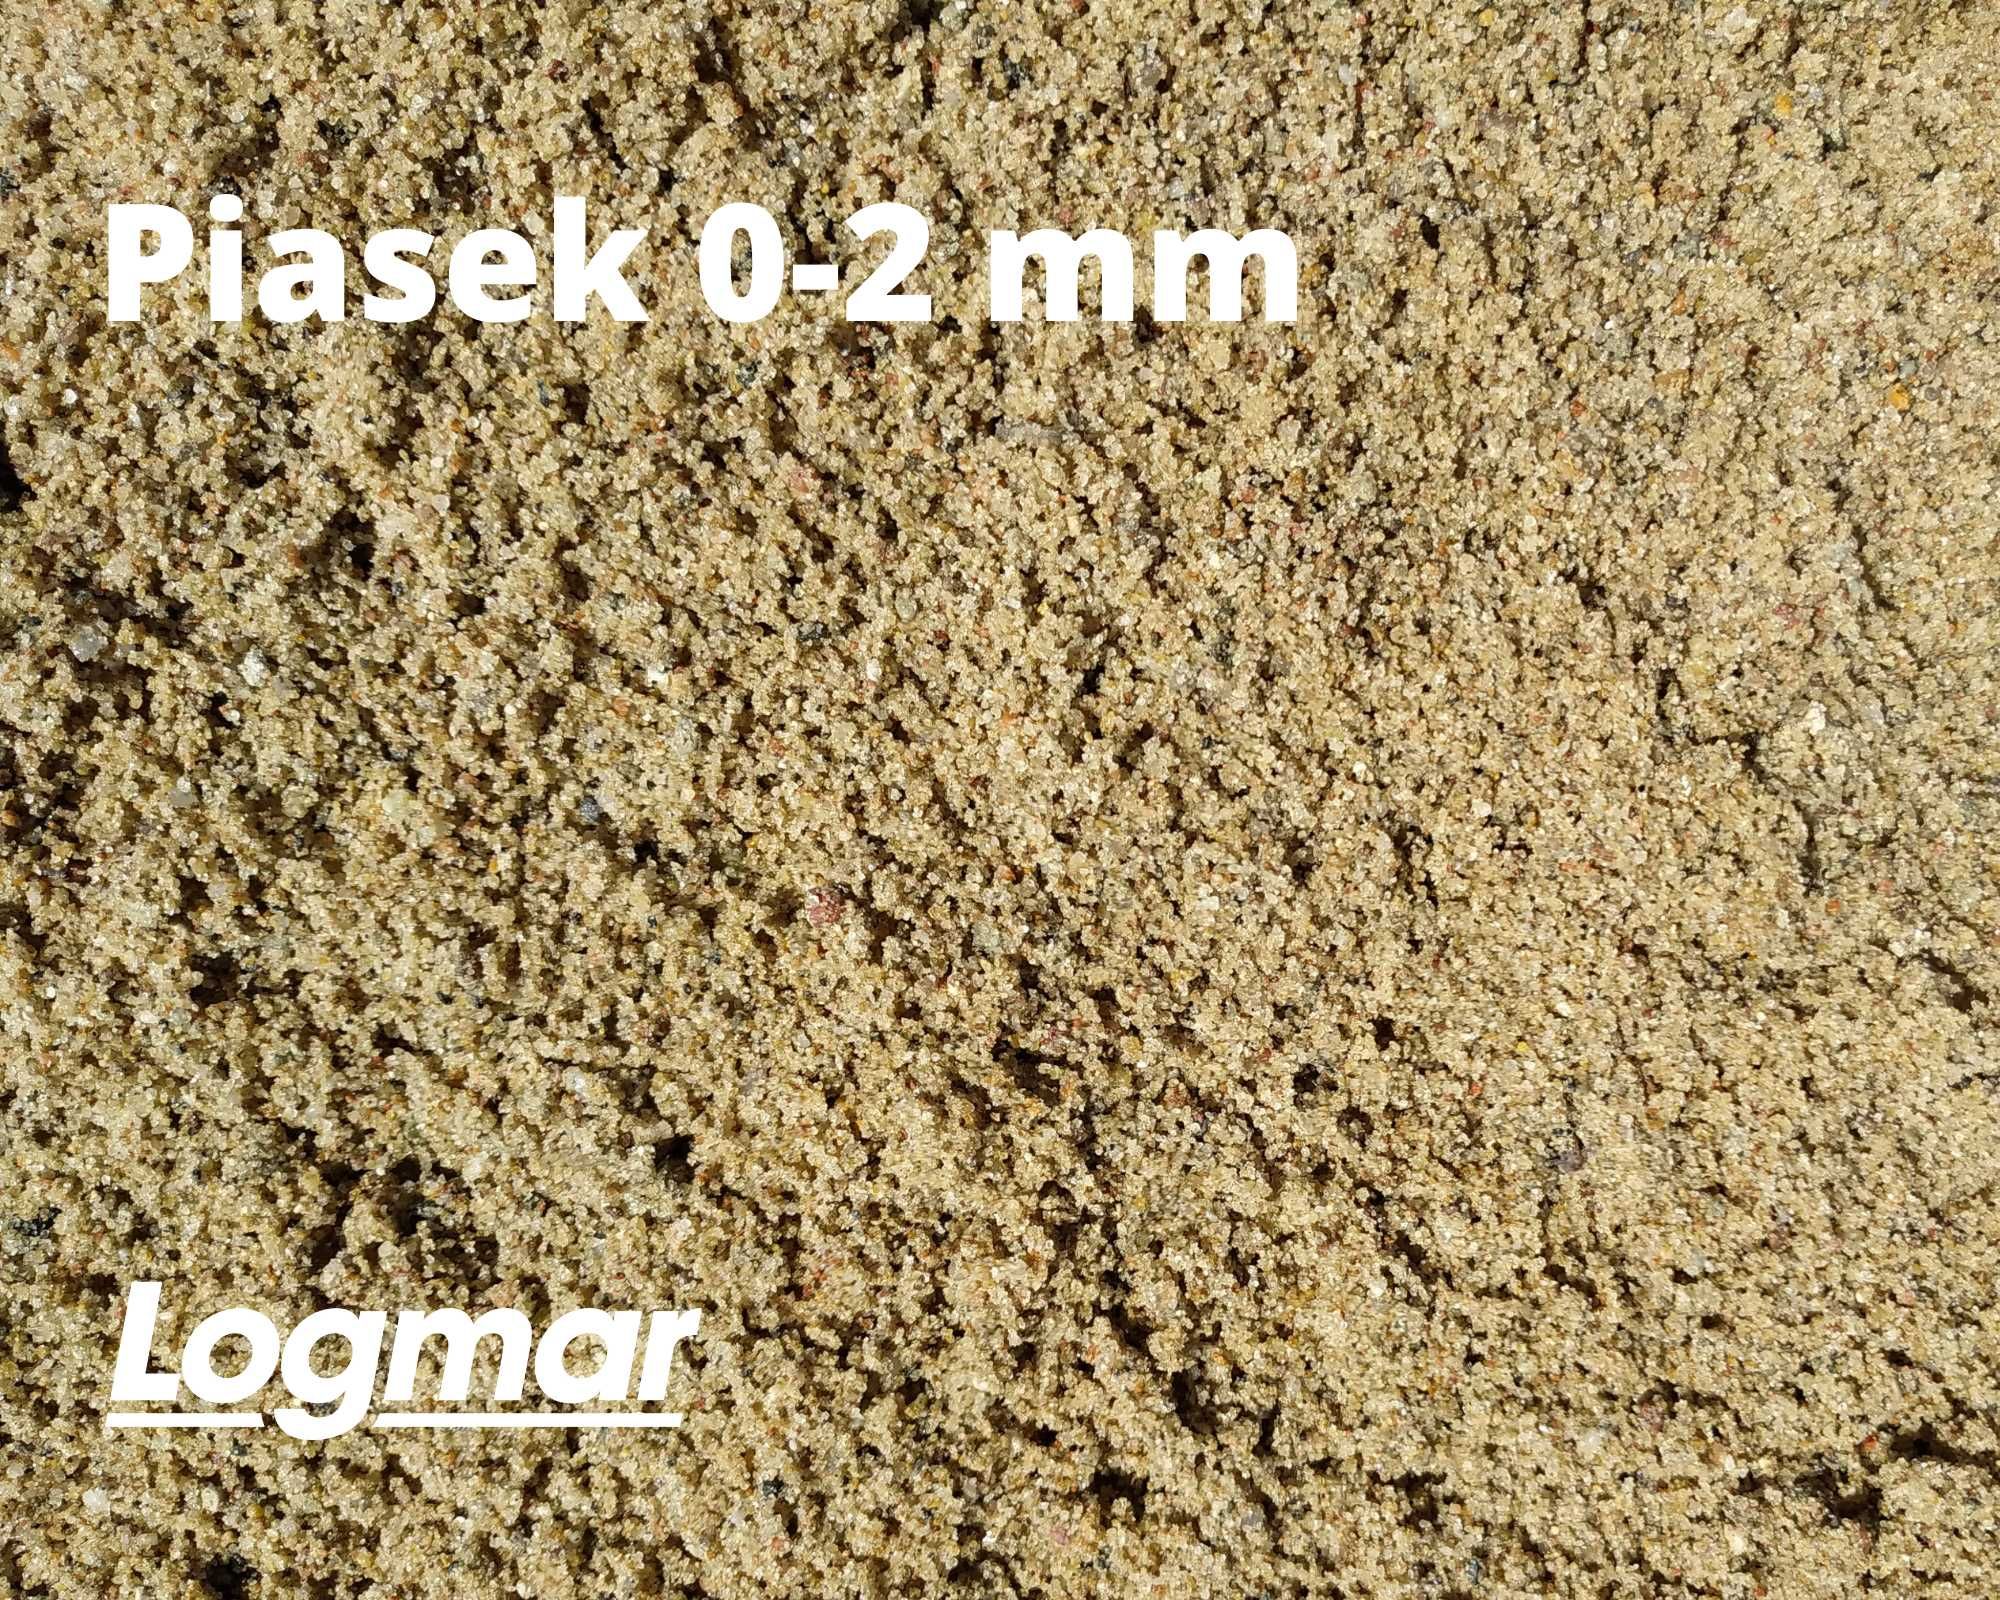 Żwirownia piasek pospółka żwir kruszywa tłuczeń gruz czarnoziem worki